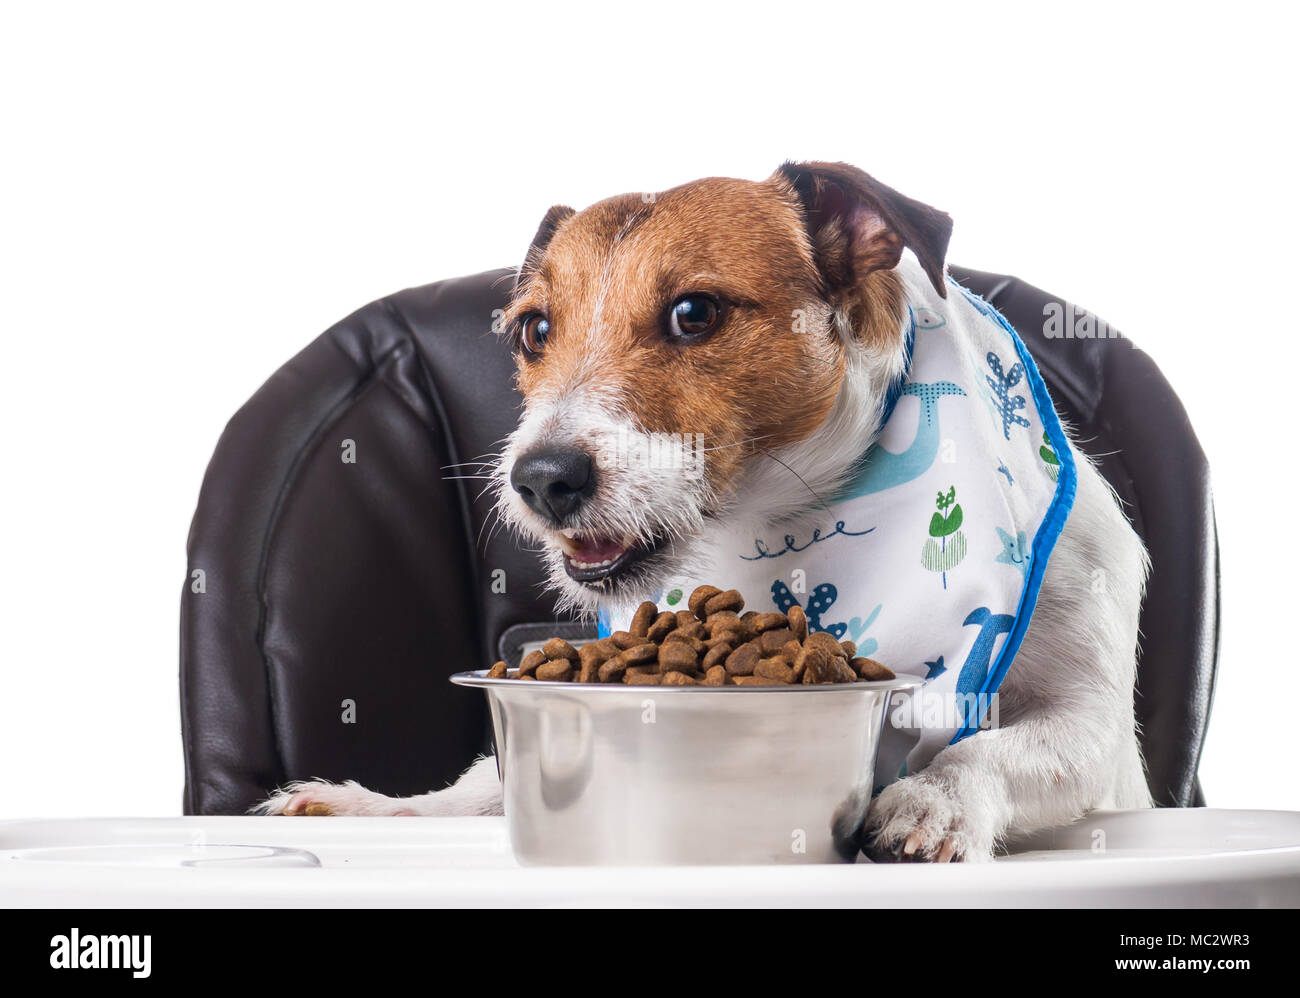 Alimentazione animale strano concetto con i cani catturati a mangiare cibo al bambino la tabella Foto Stock